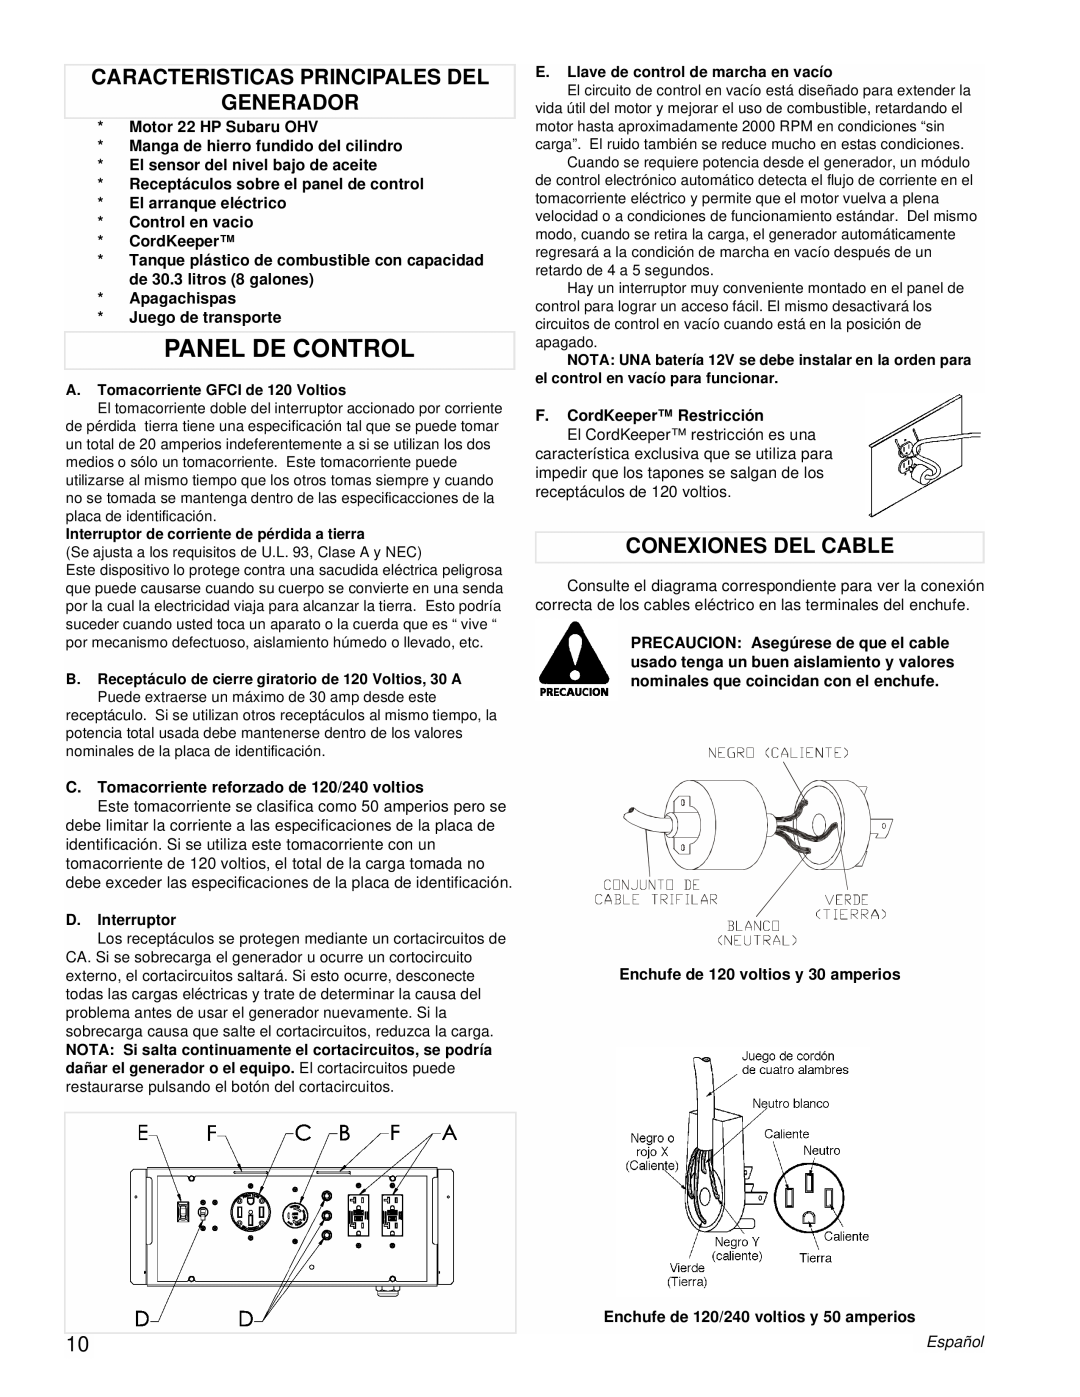 Powermate PMC601200 manual Panel De Control, Caracteristicas Principales Del Generador, Conexiones Del Cable 